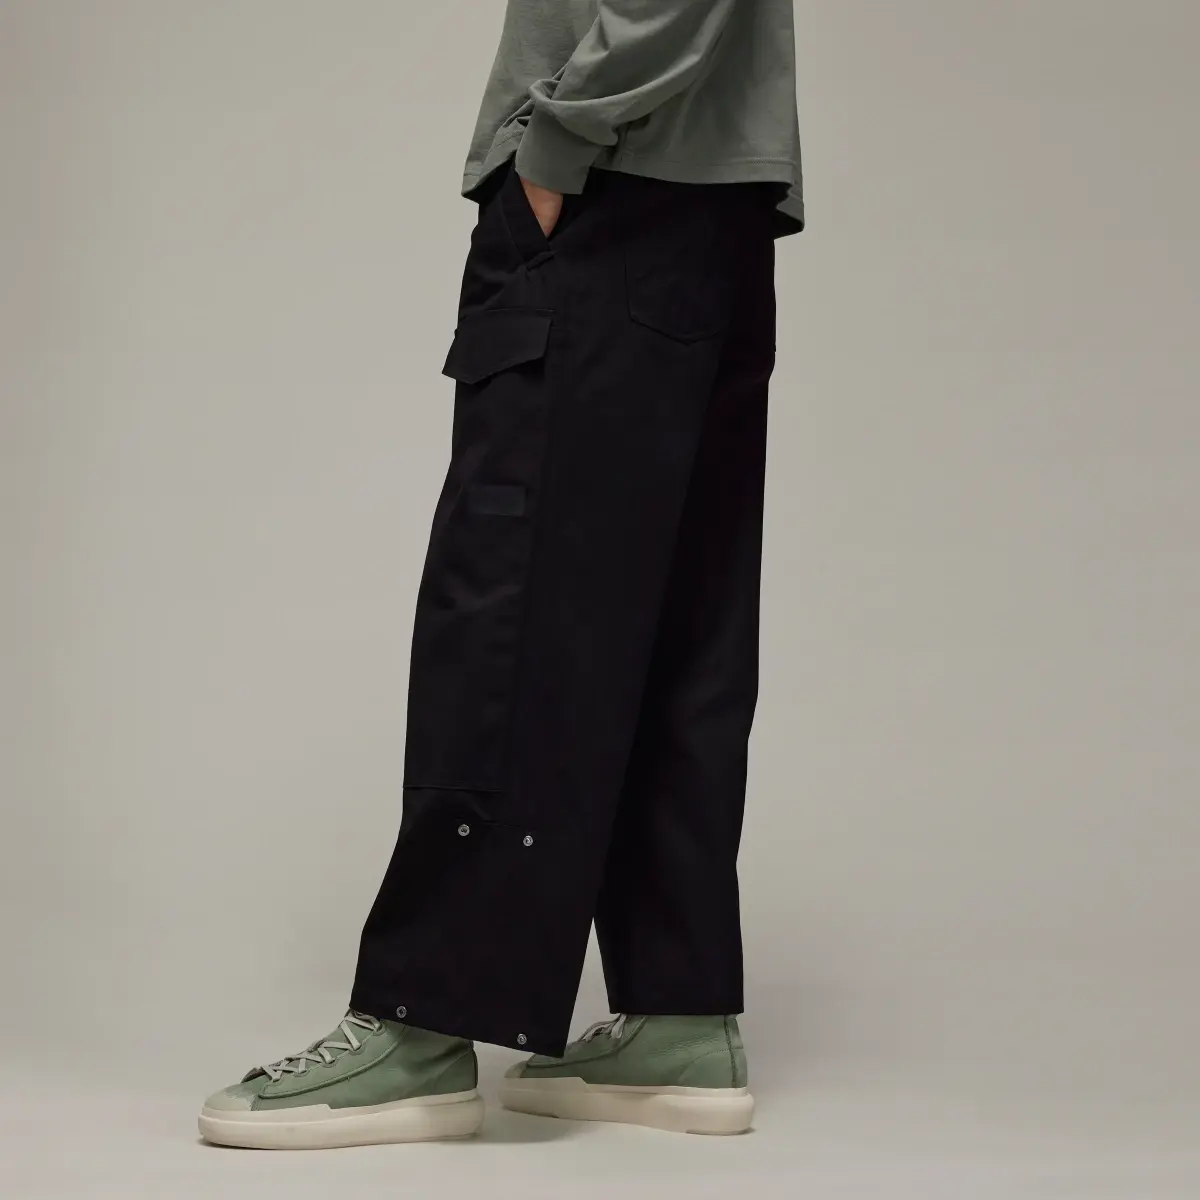 Adidas Pantalon cargo workwear Y-3. 2